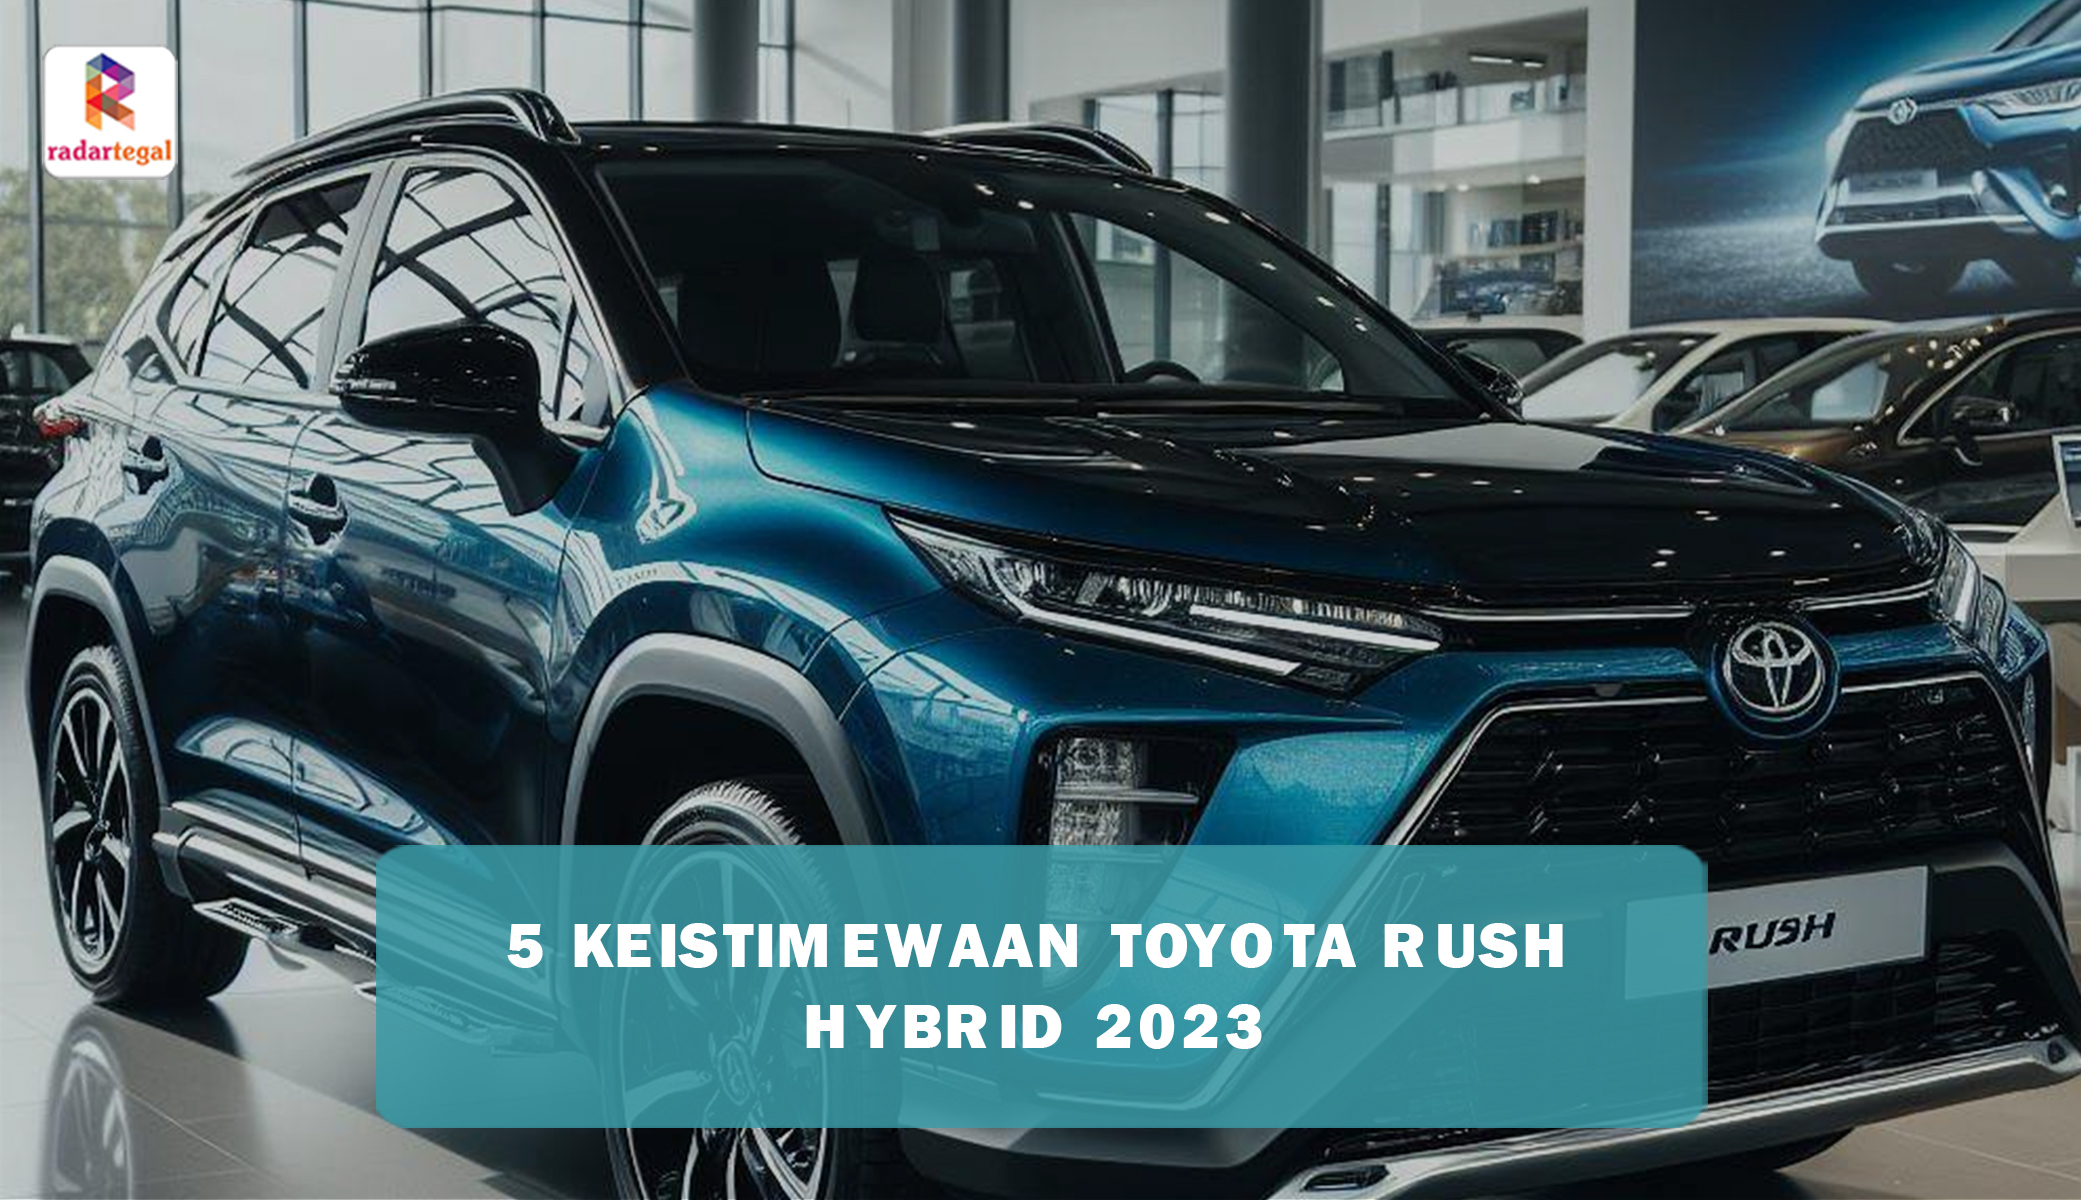 Dapat Ulasan Positif, Ini 5 Keistimewaan Toyota Rush Hybrid 2023 yang Bikin Penggemar Jatuh Cinta